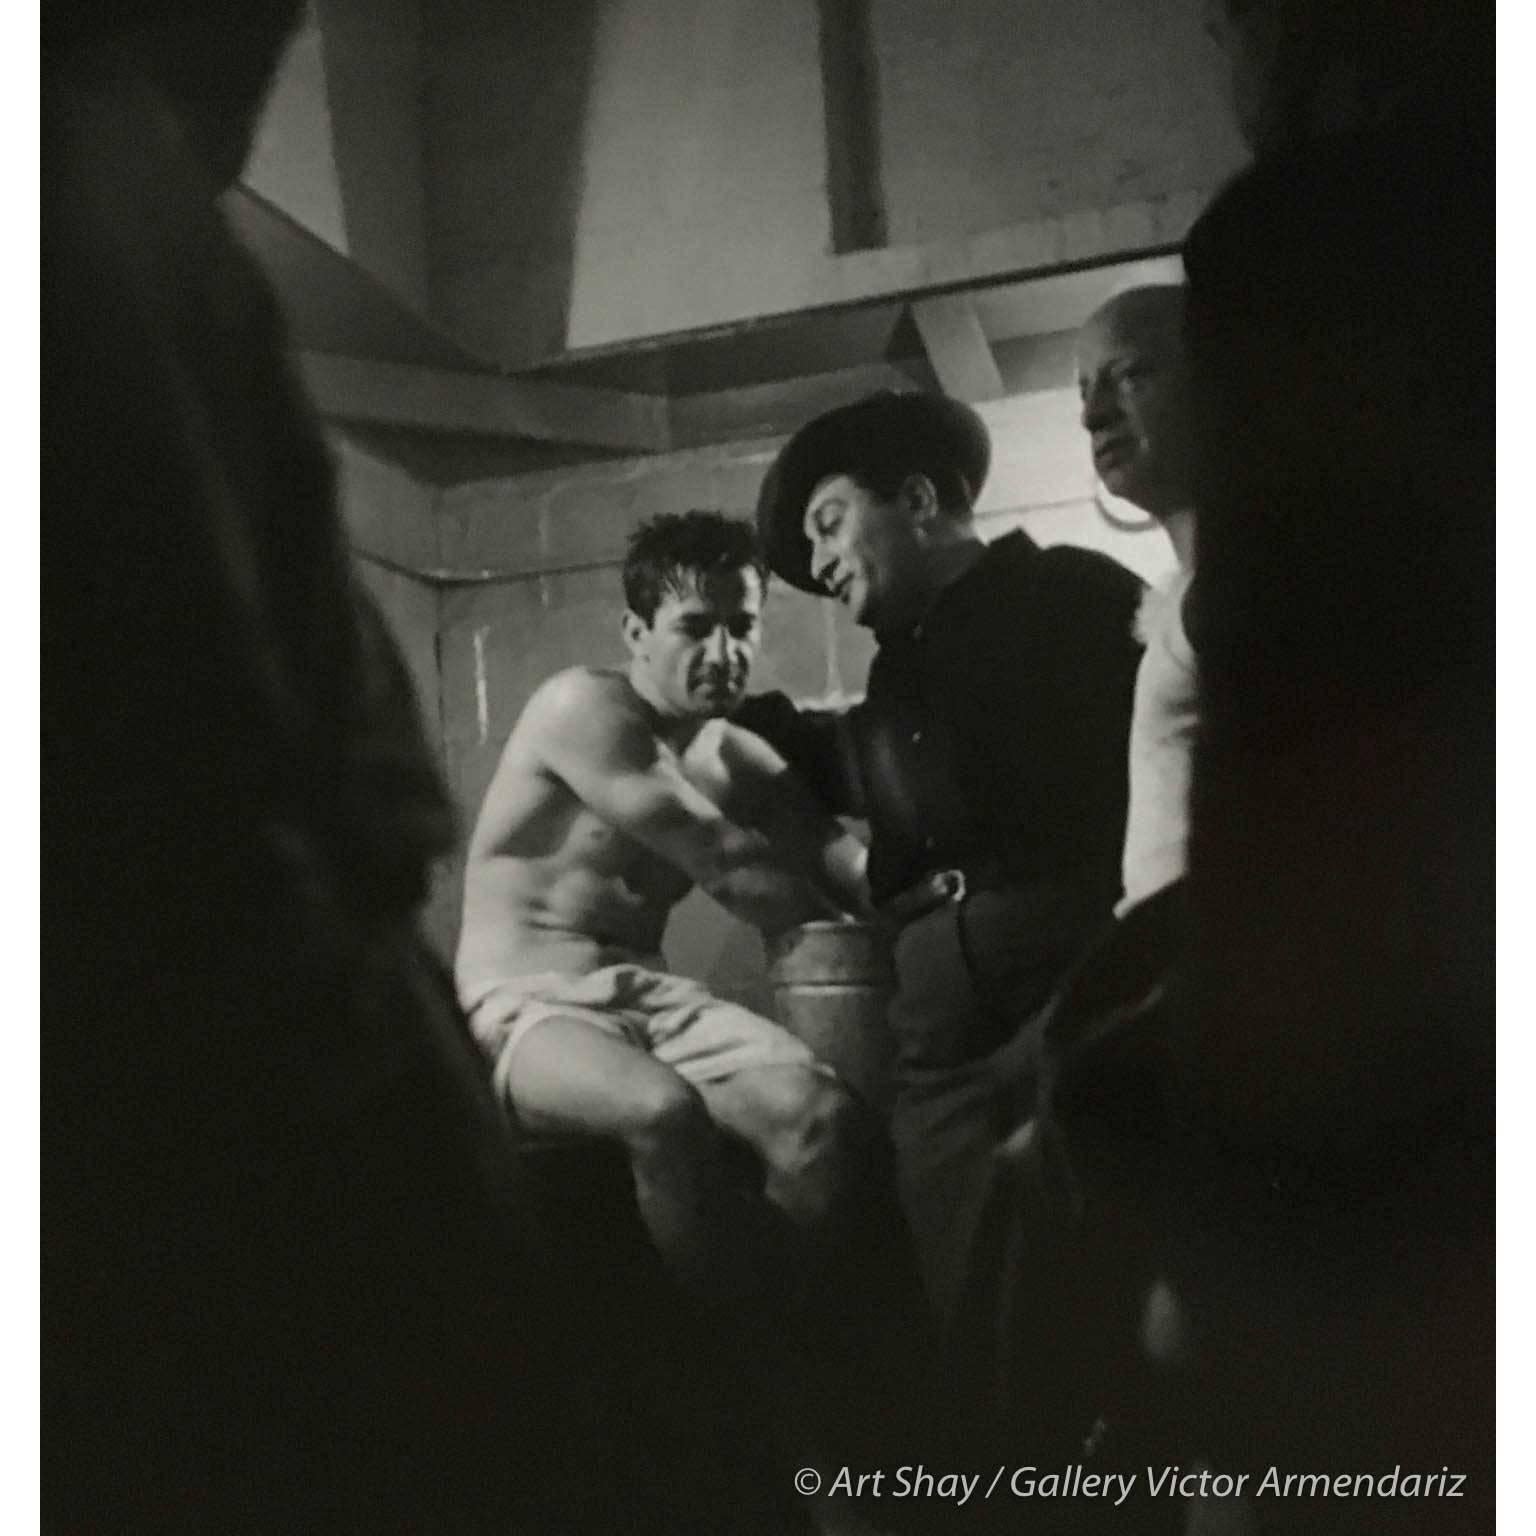 Superbe combat de boxe, Rocky Graciano dans la salle de verrouillage après un combat, 1948 - Photograph de Art Shay